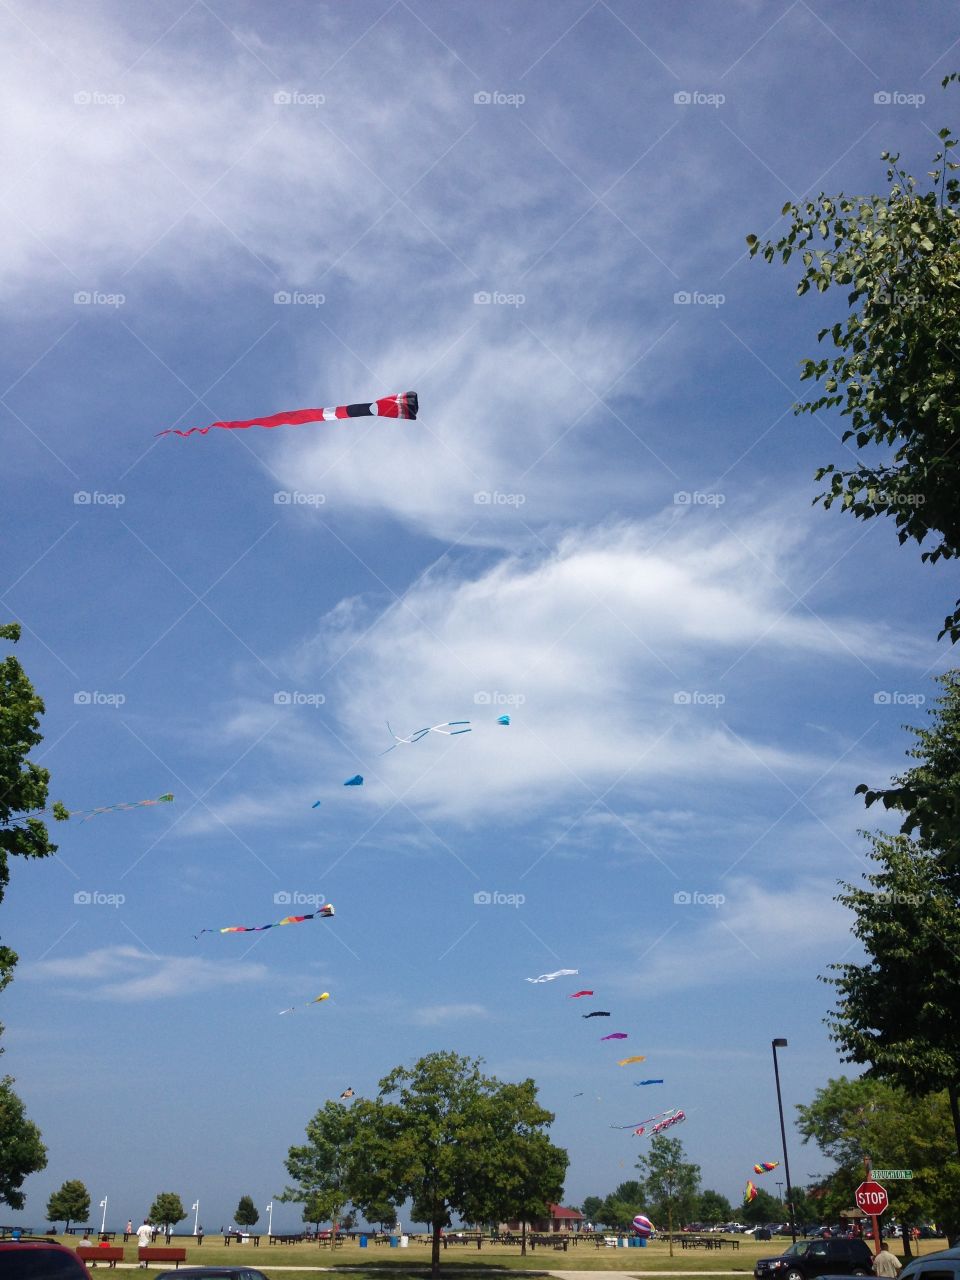 Kite flying. Deland park Sheboygan wi